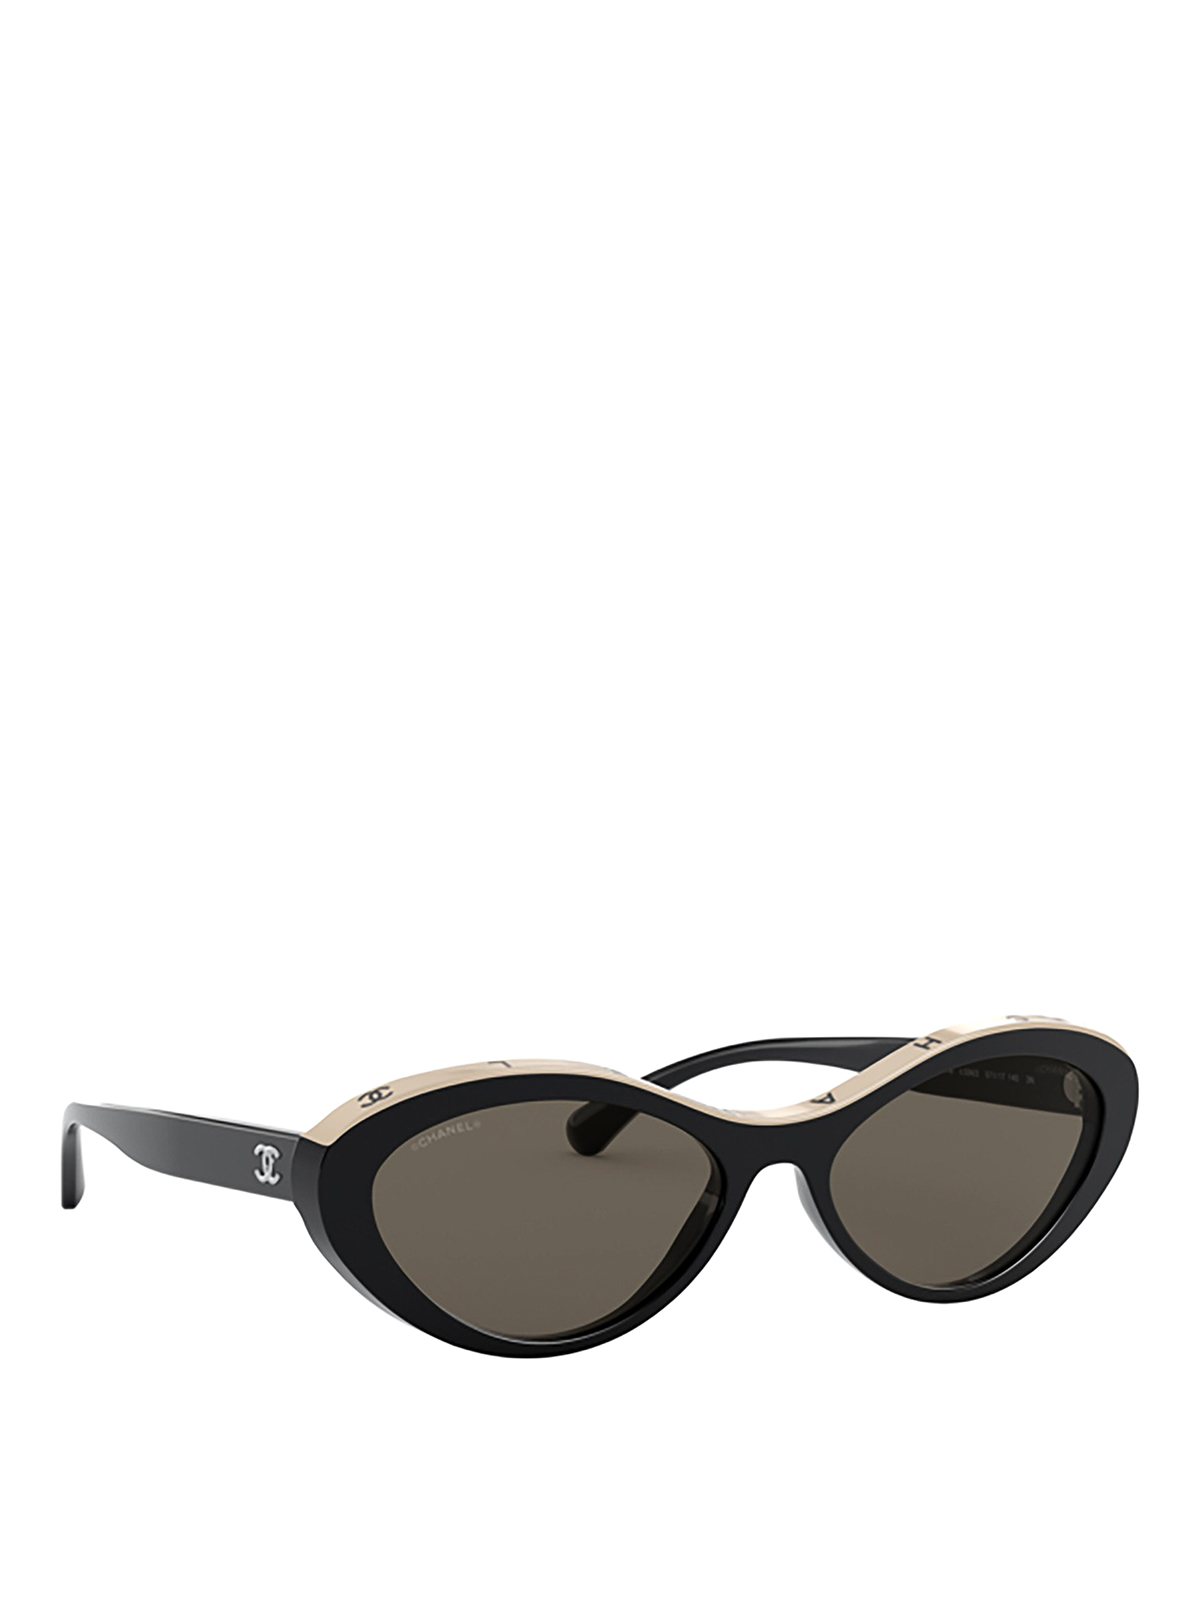 Chanel  Cat Eye Sunglasses  Black Beige Brown  Chanel Eyewear  Avvenice